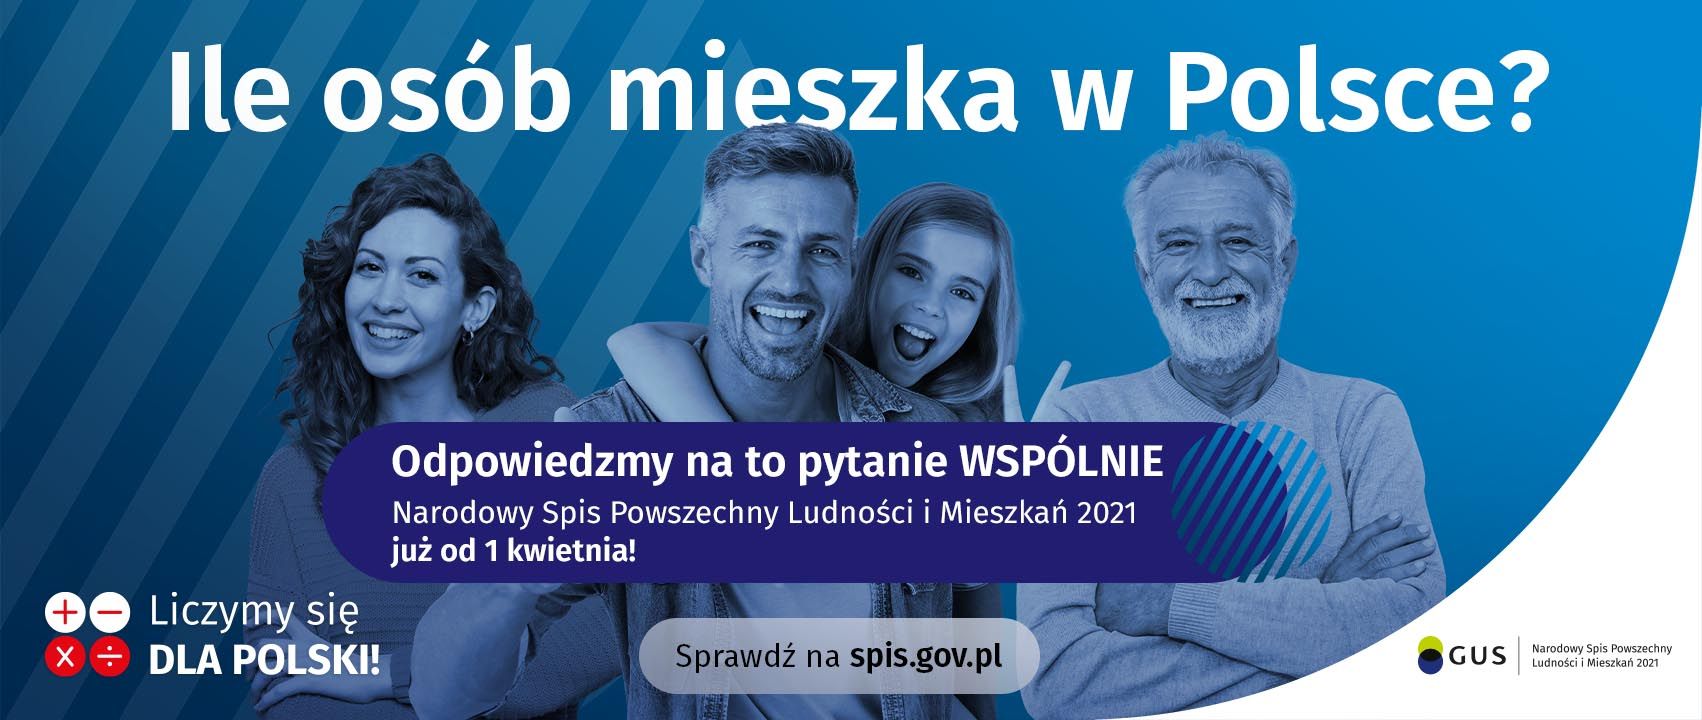 Banner informacyjny o Narodowym Spisie Powszechnym, osoby na niebieskim tle, napis "wejdź na spis.gov.pl i spisz się! Spis trwa od 1 kwietnia", 